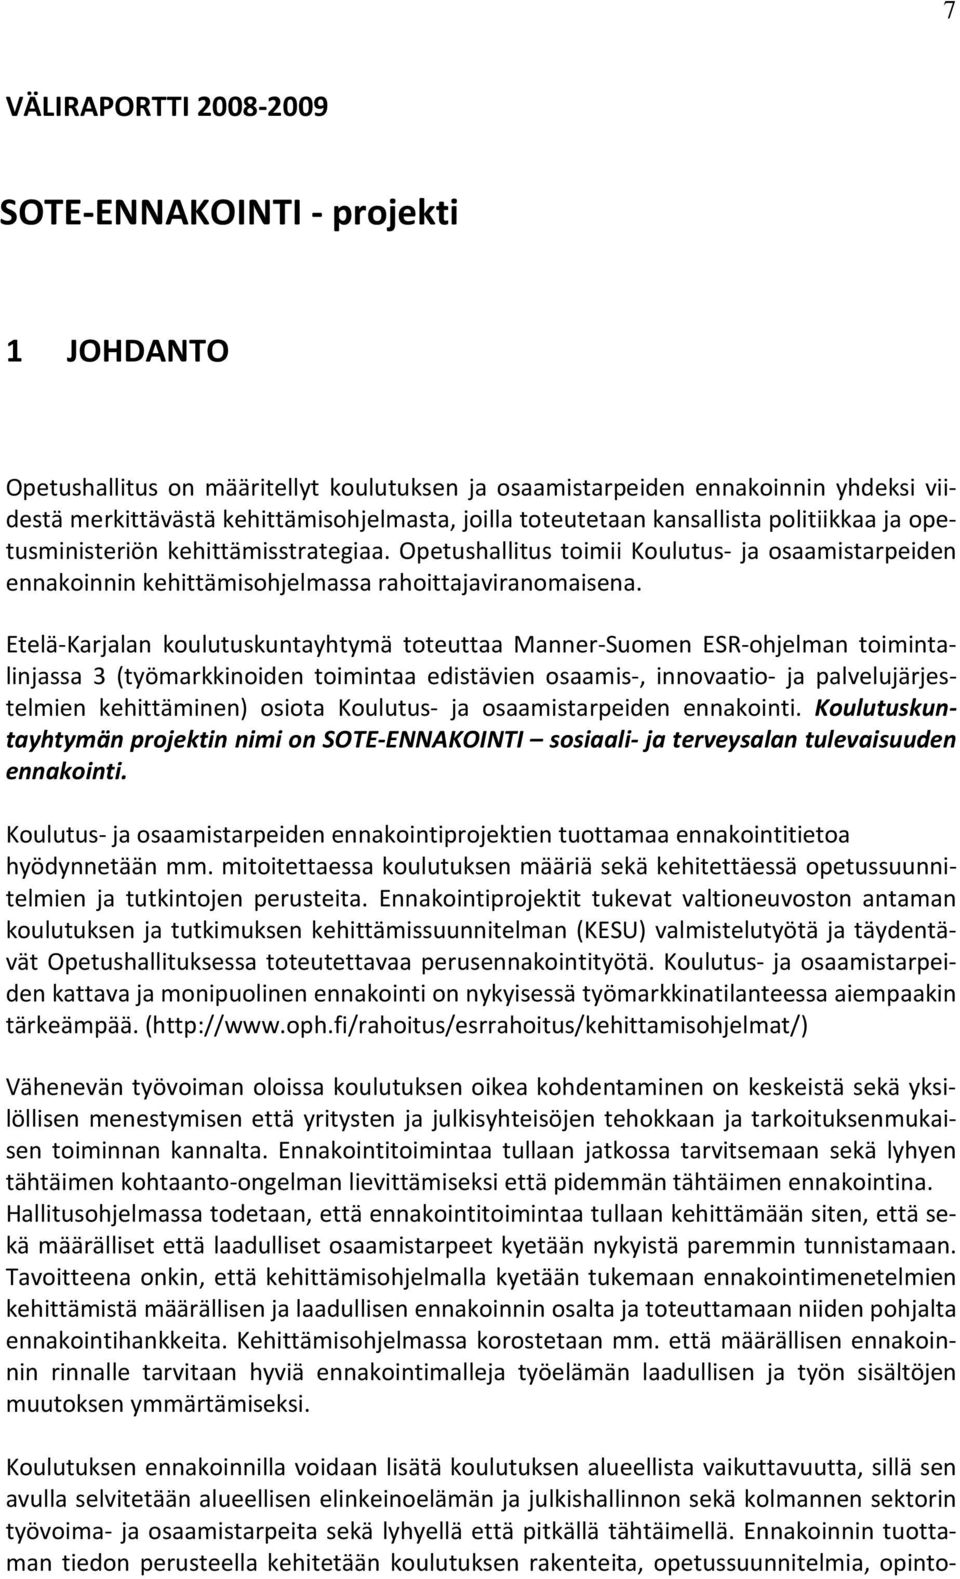 Etelä-Karjalan koulutuskuntayhtymä toteuttaa Manner-Suomen ESR-ohjelman toimintalinjassa 3 (työmarkkinoiden toimintaa edistävien osaamis-, innovaatio- ja palvelujärjestelmien kehittäminen) osiota